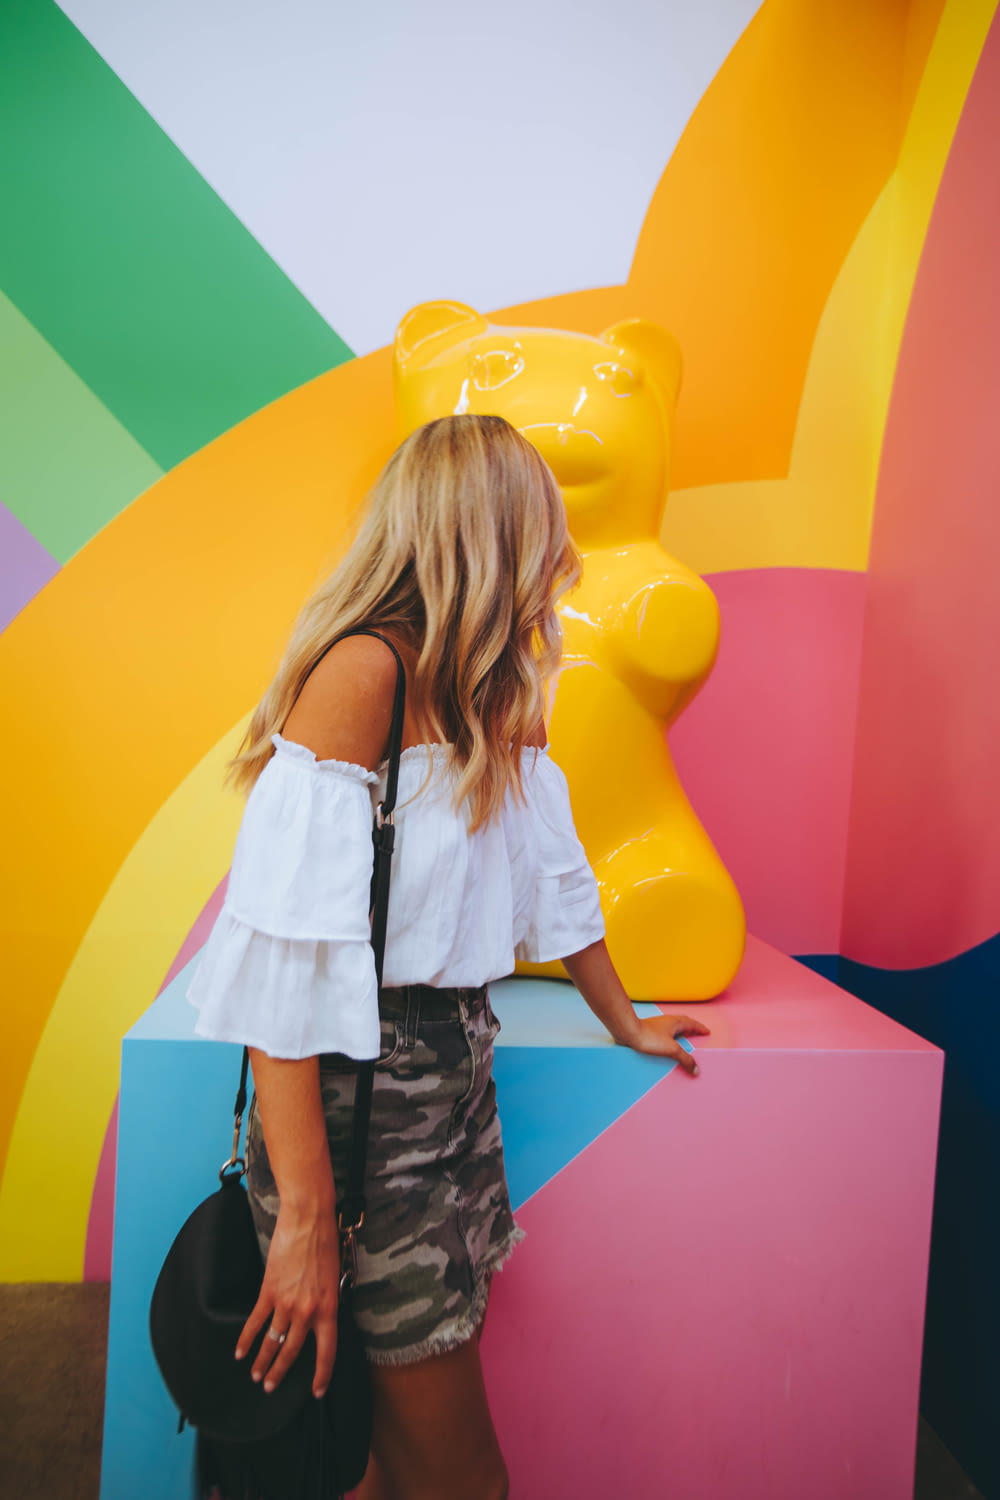 Femme regardant la sculpture d’ours jaune